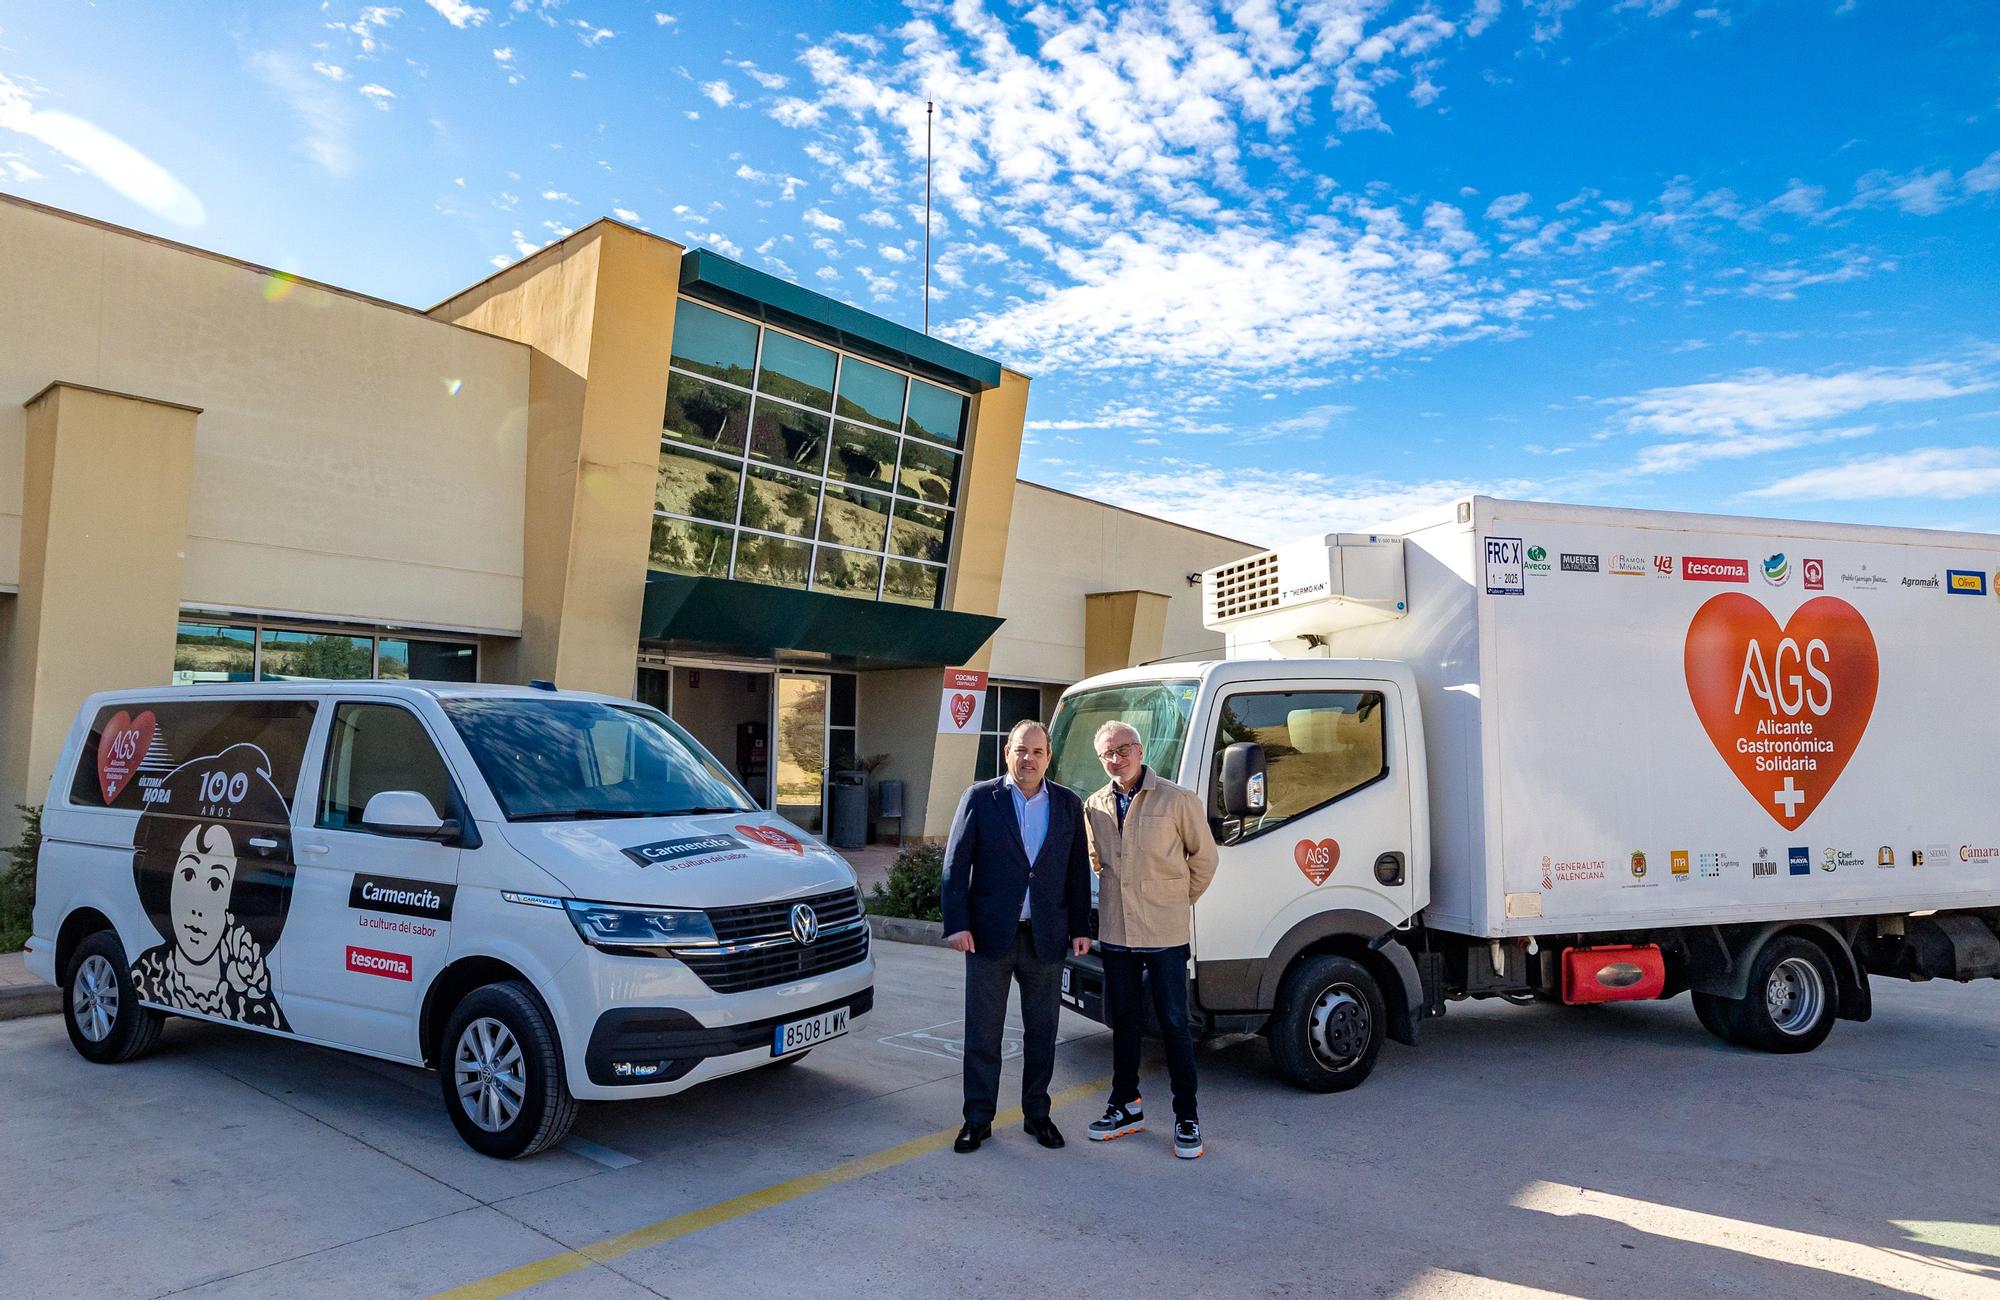 El vehículo es una donación de la empresa Carmencita. La ong coordina con sus empresas colaboradoras el envío de un camión con alimentos a Ucrania